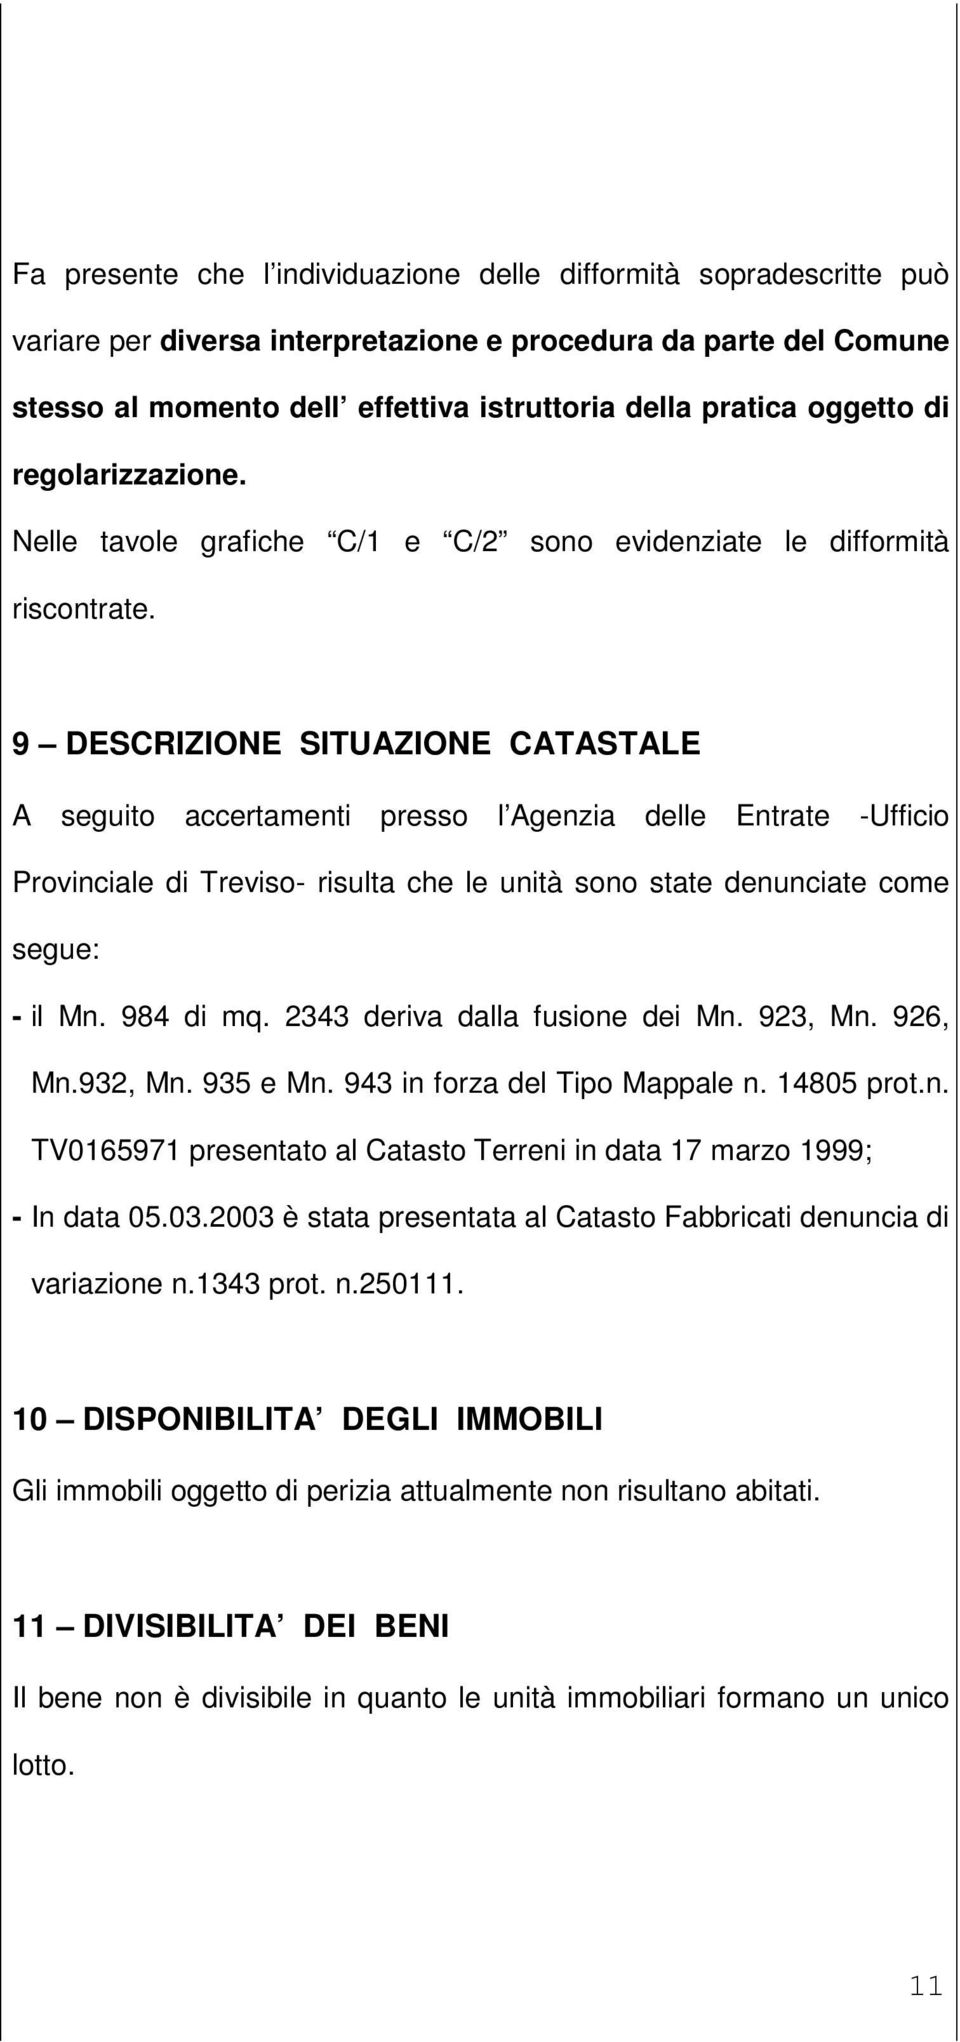 9 DESCRIZIONE SITUAZIONE CATASTALE A seguito accertamenti presso l Agenzia delle Entrate -Ufficio Provinciale di Treviso- risulta che le unità sono state denunciate come segue: - il Mn. 984 di mq.